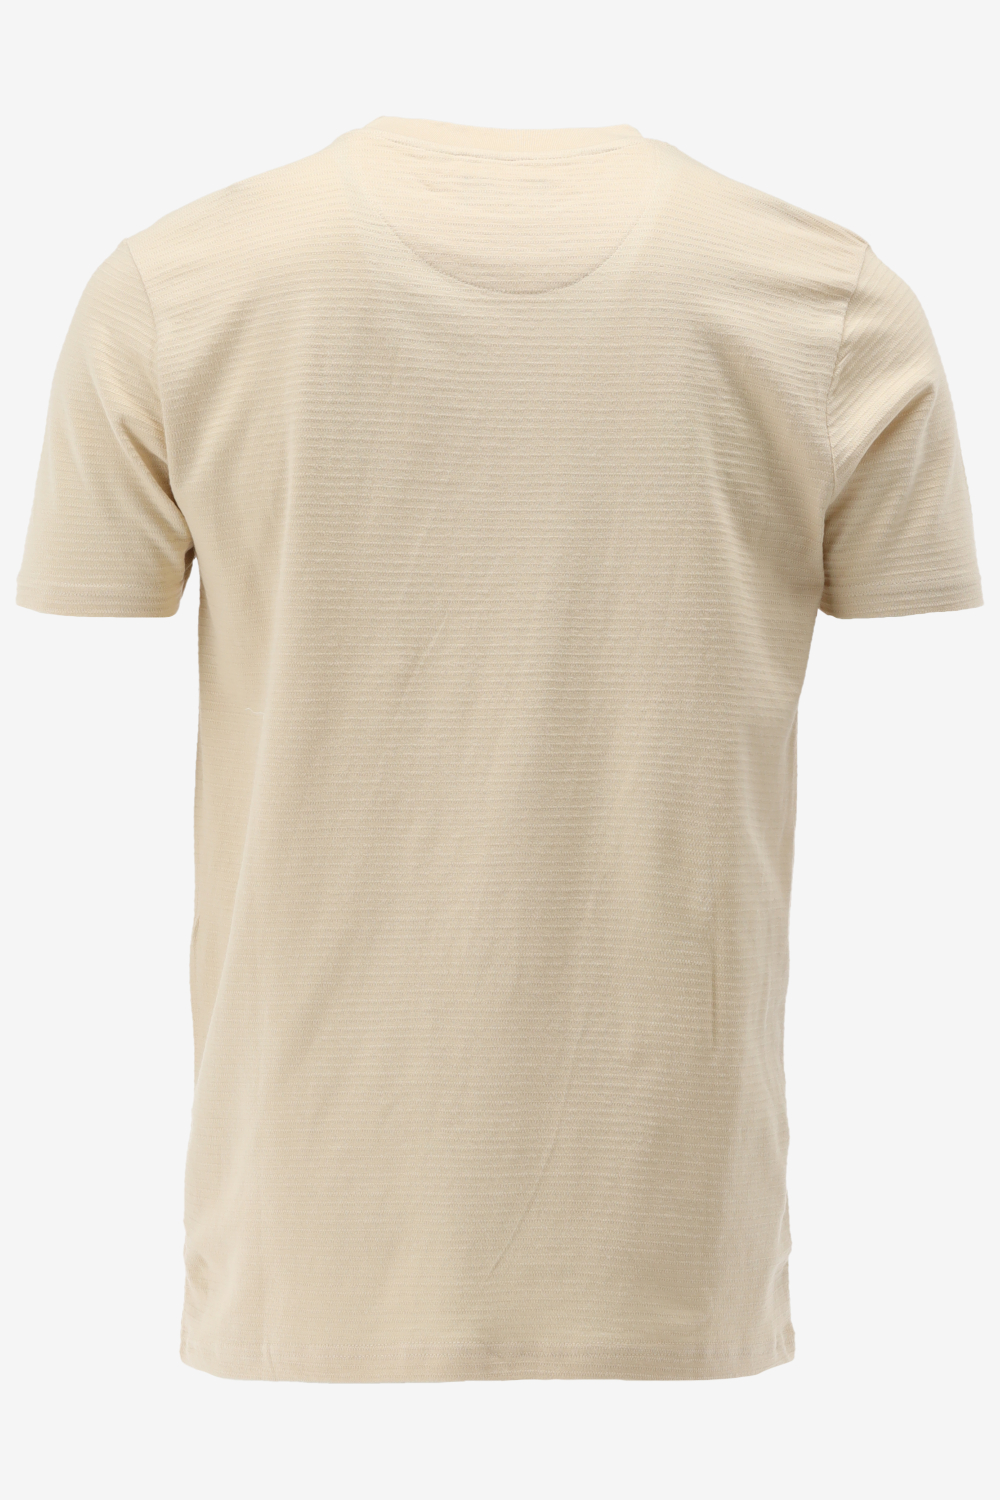 Presly & Sun T-shirt SYLVESTER